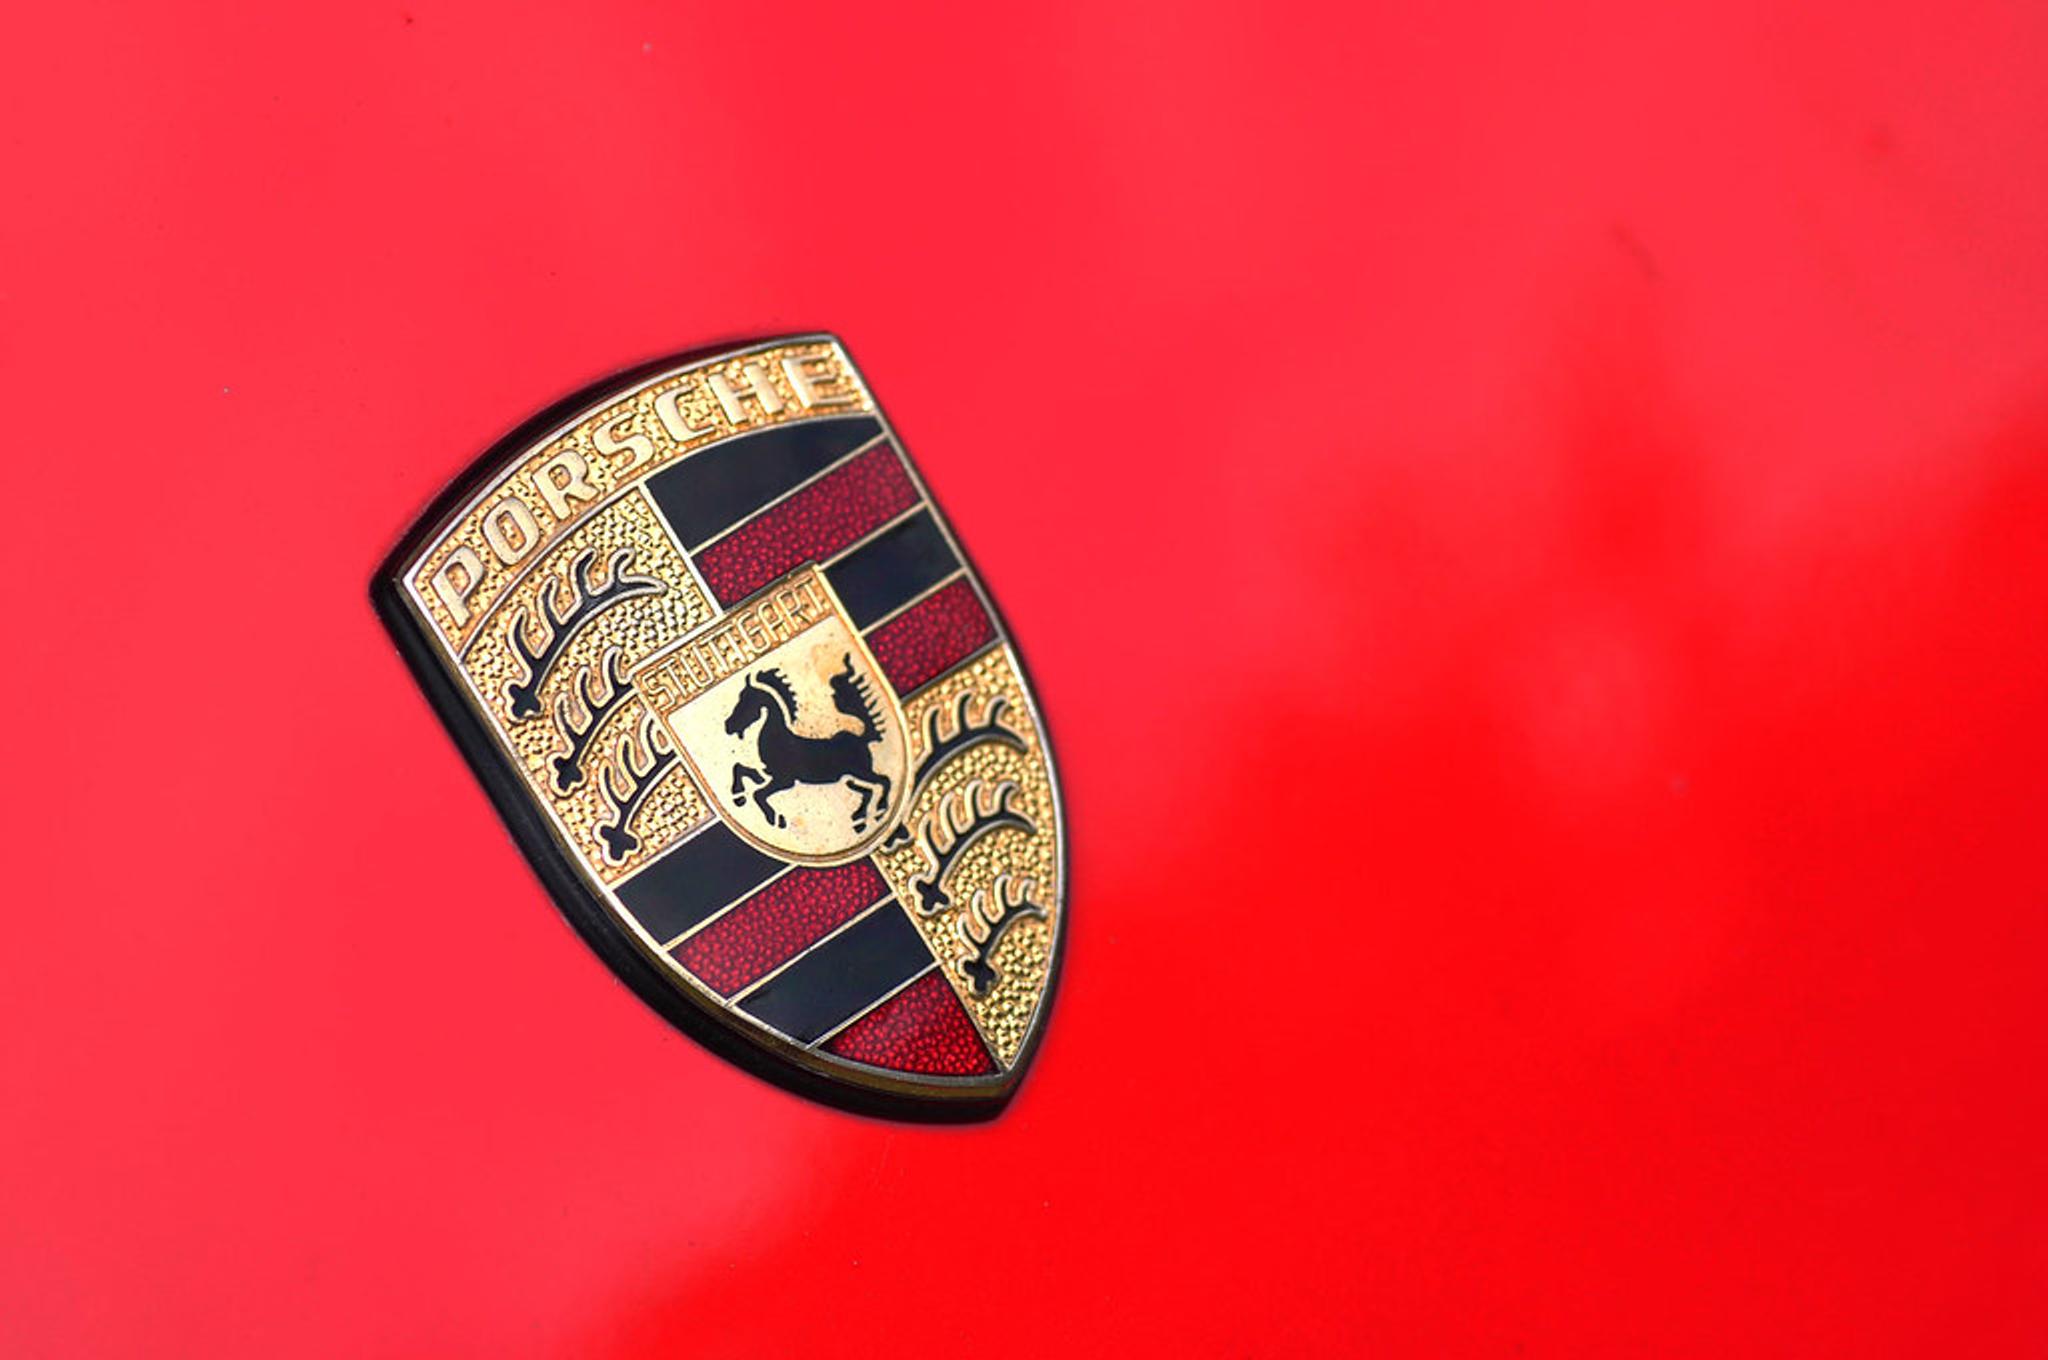 Porsche badge on a red car